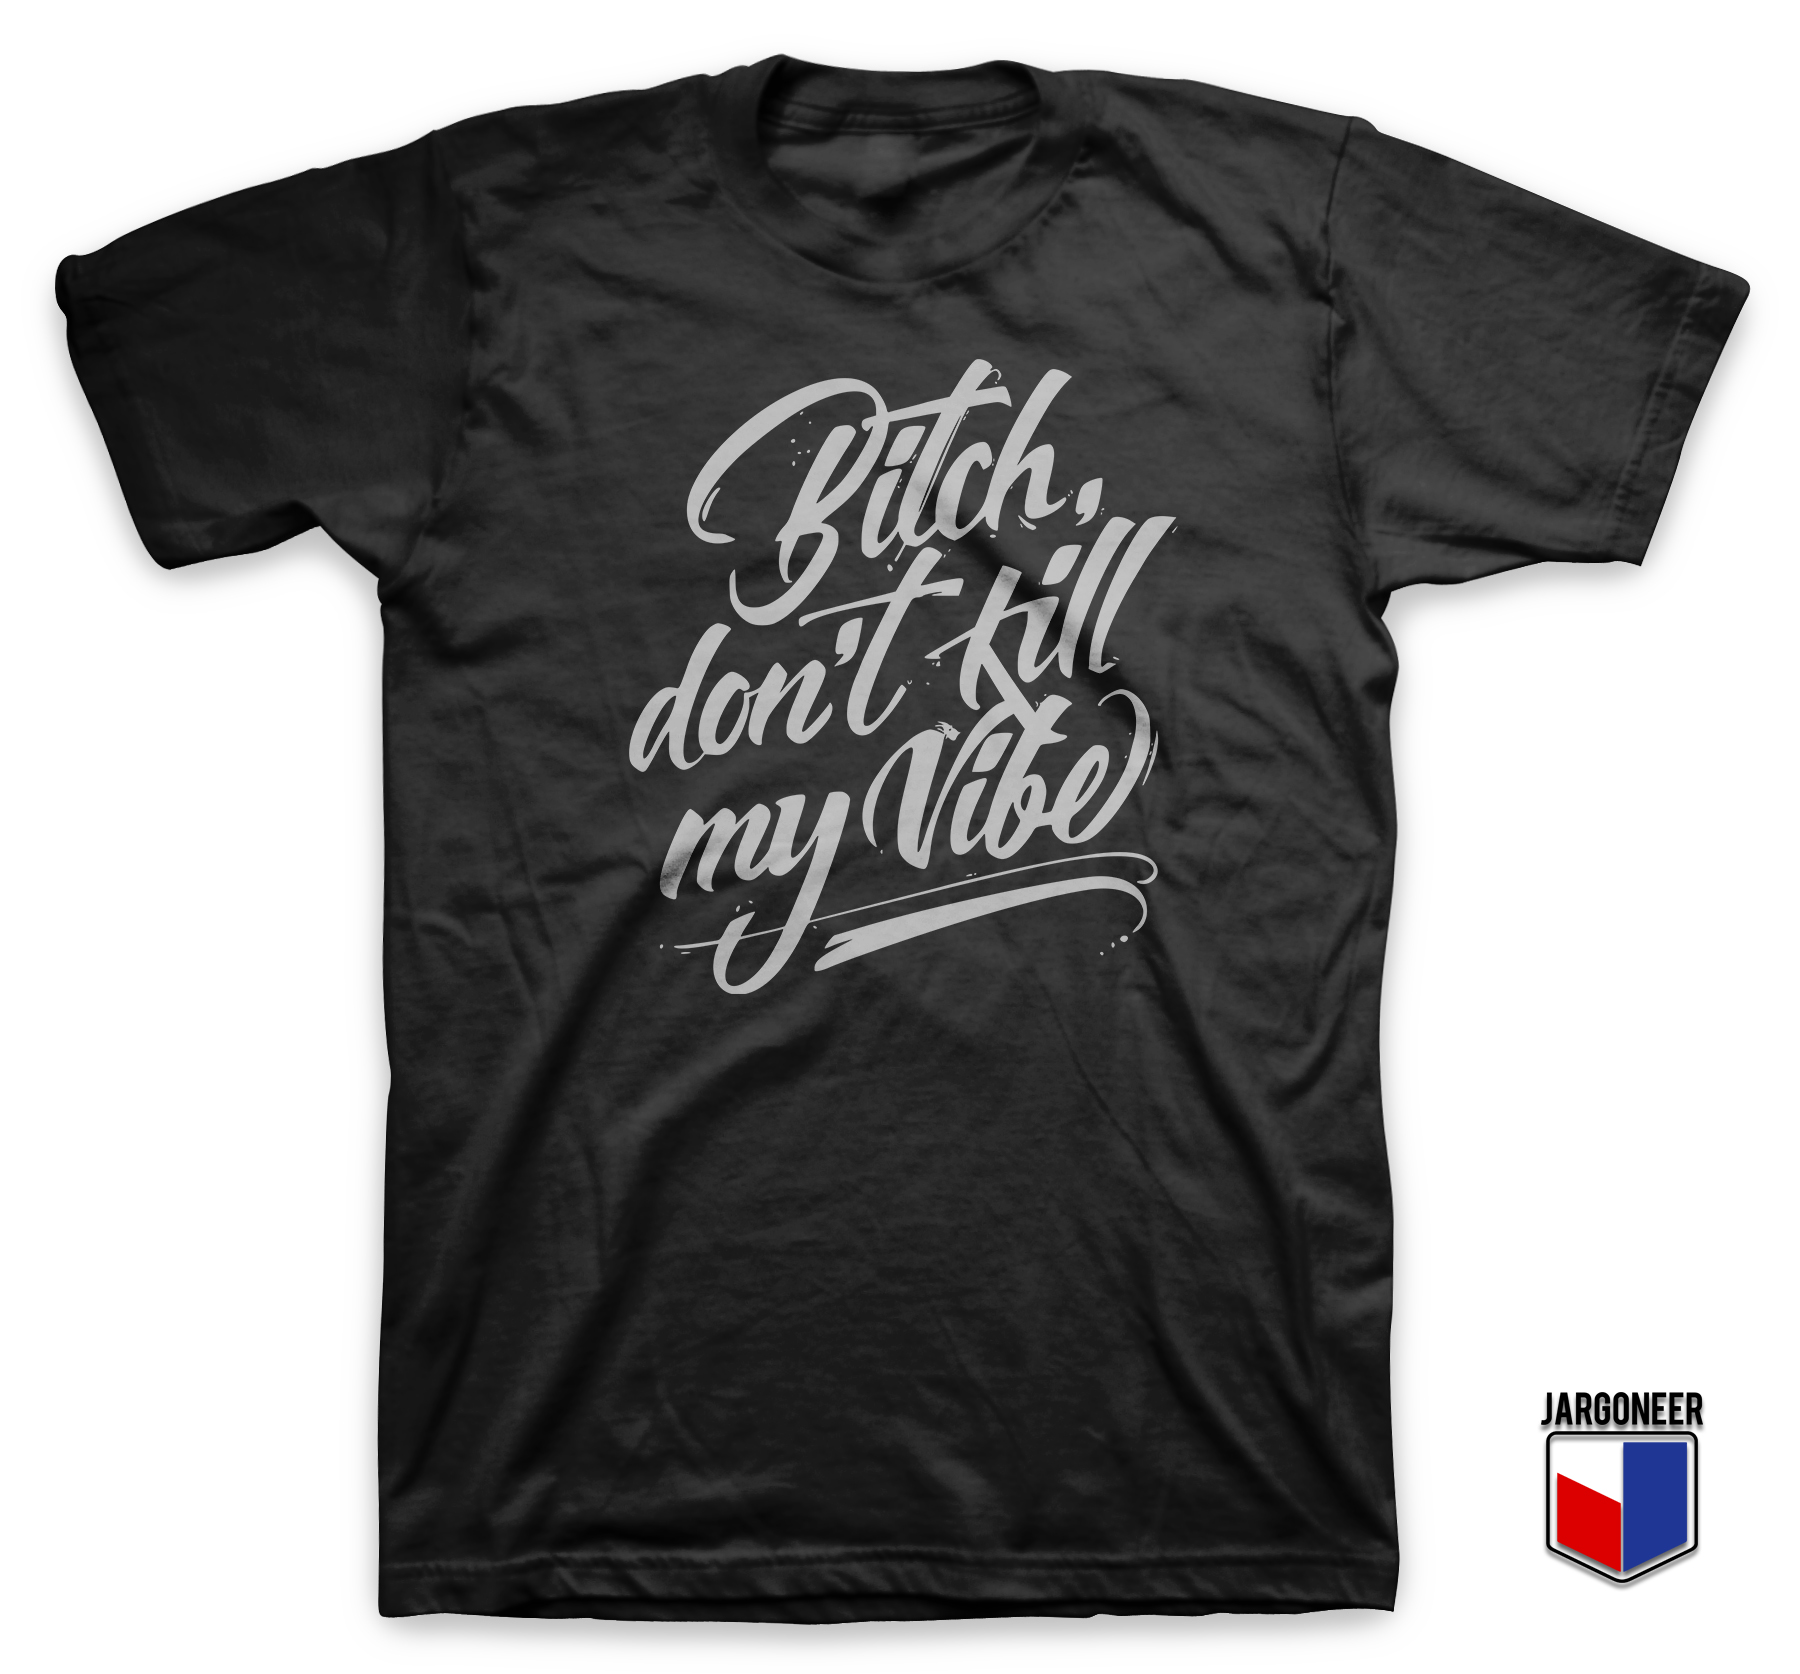 Bitch Vibe Slogan Black T Shirt - Shop Unique Graphic Cool Shirt Designs